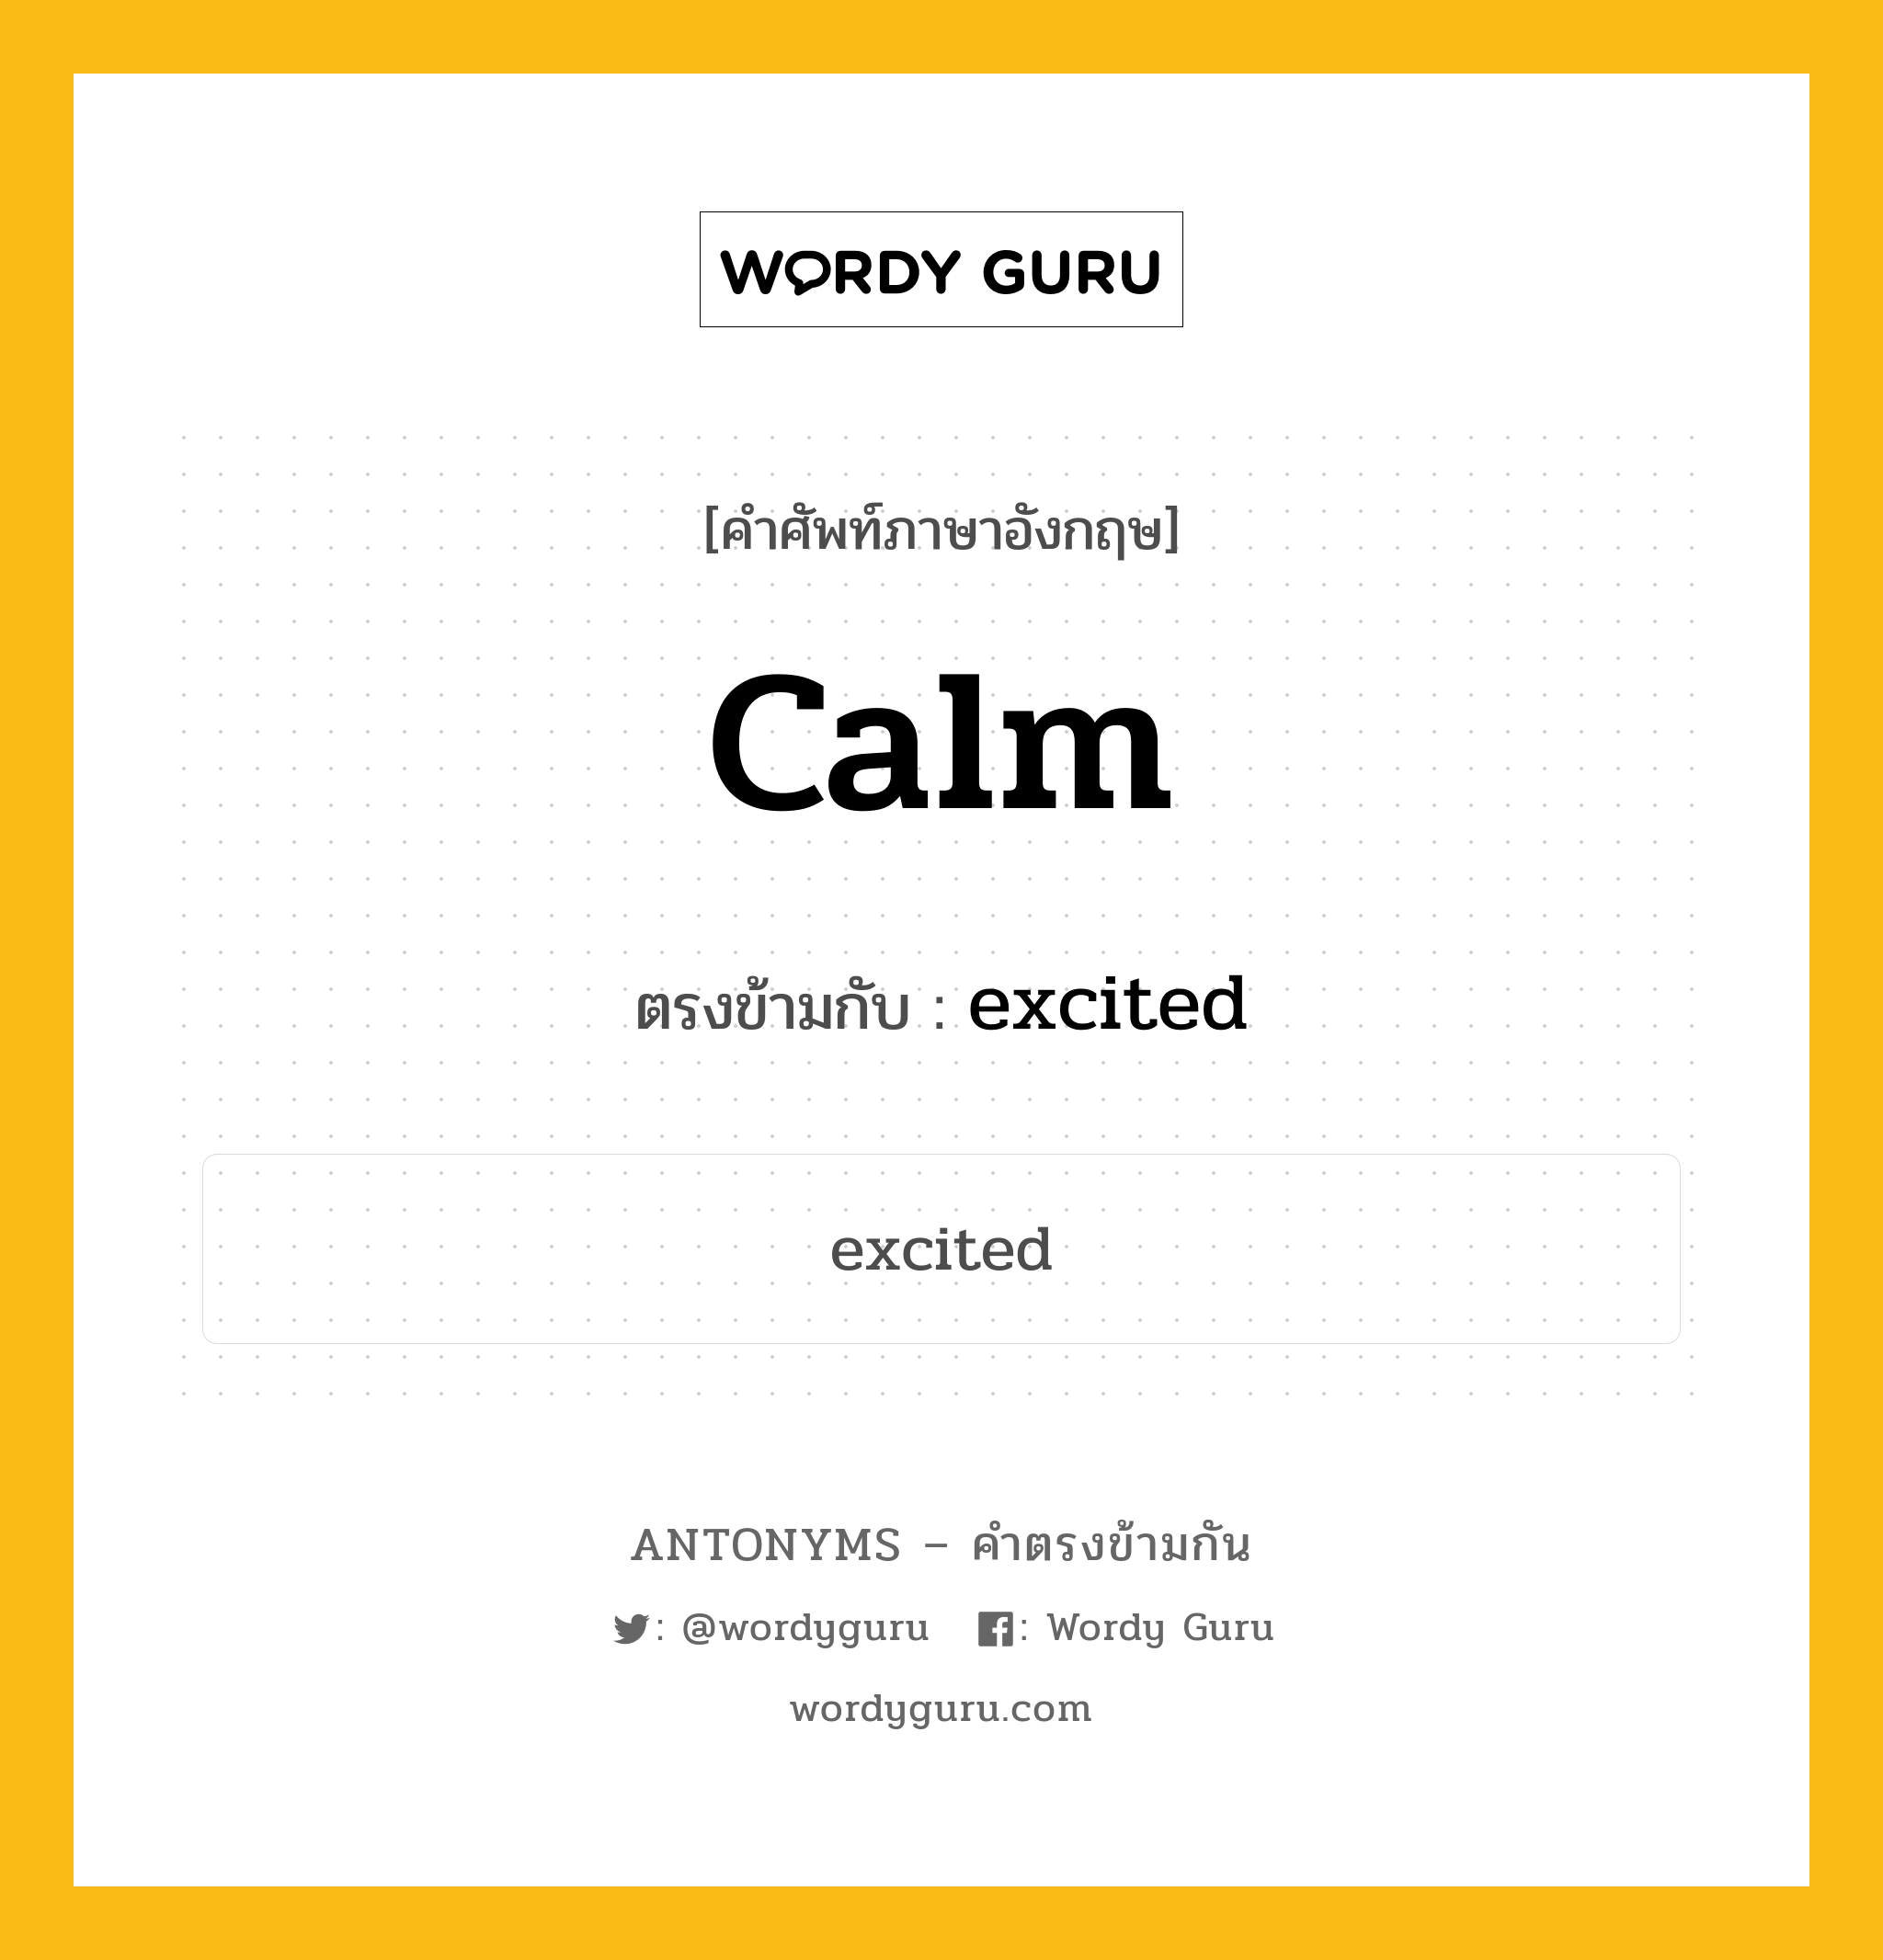 calm เป็นคำตรงข้ามกับคำไหนบ้าง?, คำศัพท์ภาษาอังกฤษ calm ตรงข้ามกับ excited หมวด excited